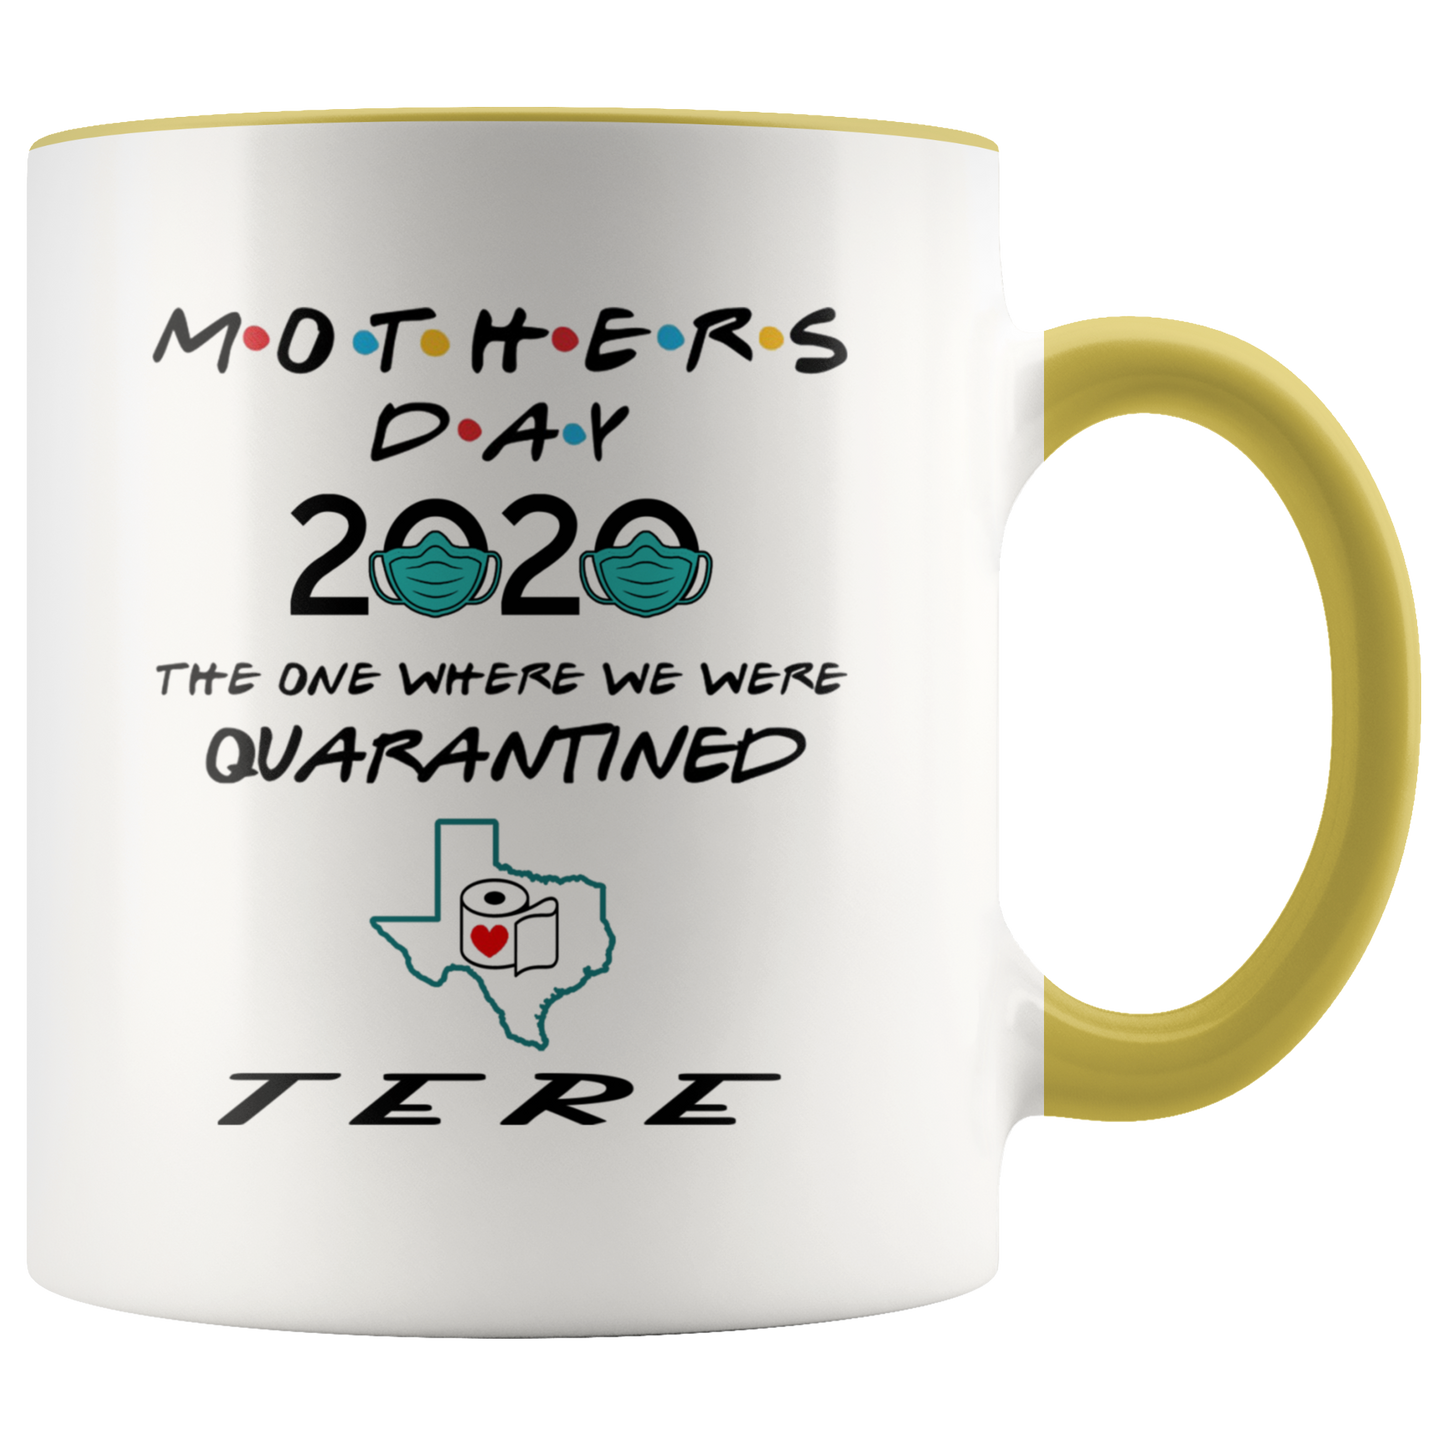 MUG01221353508-sp-26854 - [ Tere | Texas ] (CC_Accent_Mug_) Mothers Day 2020 Mug Quarantine - The One Where We Were Quar